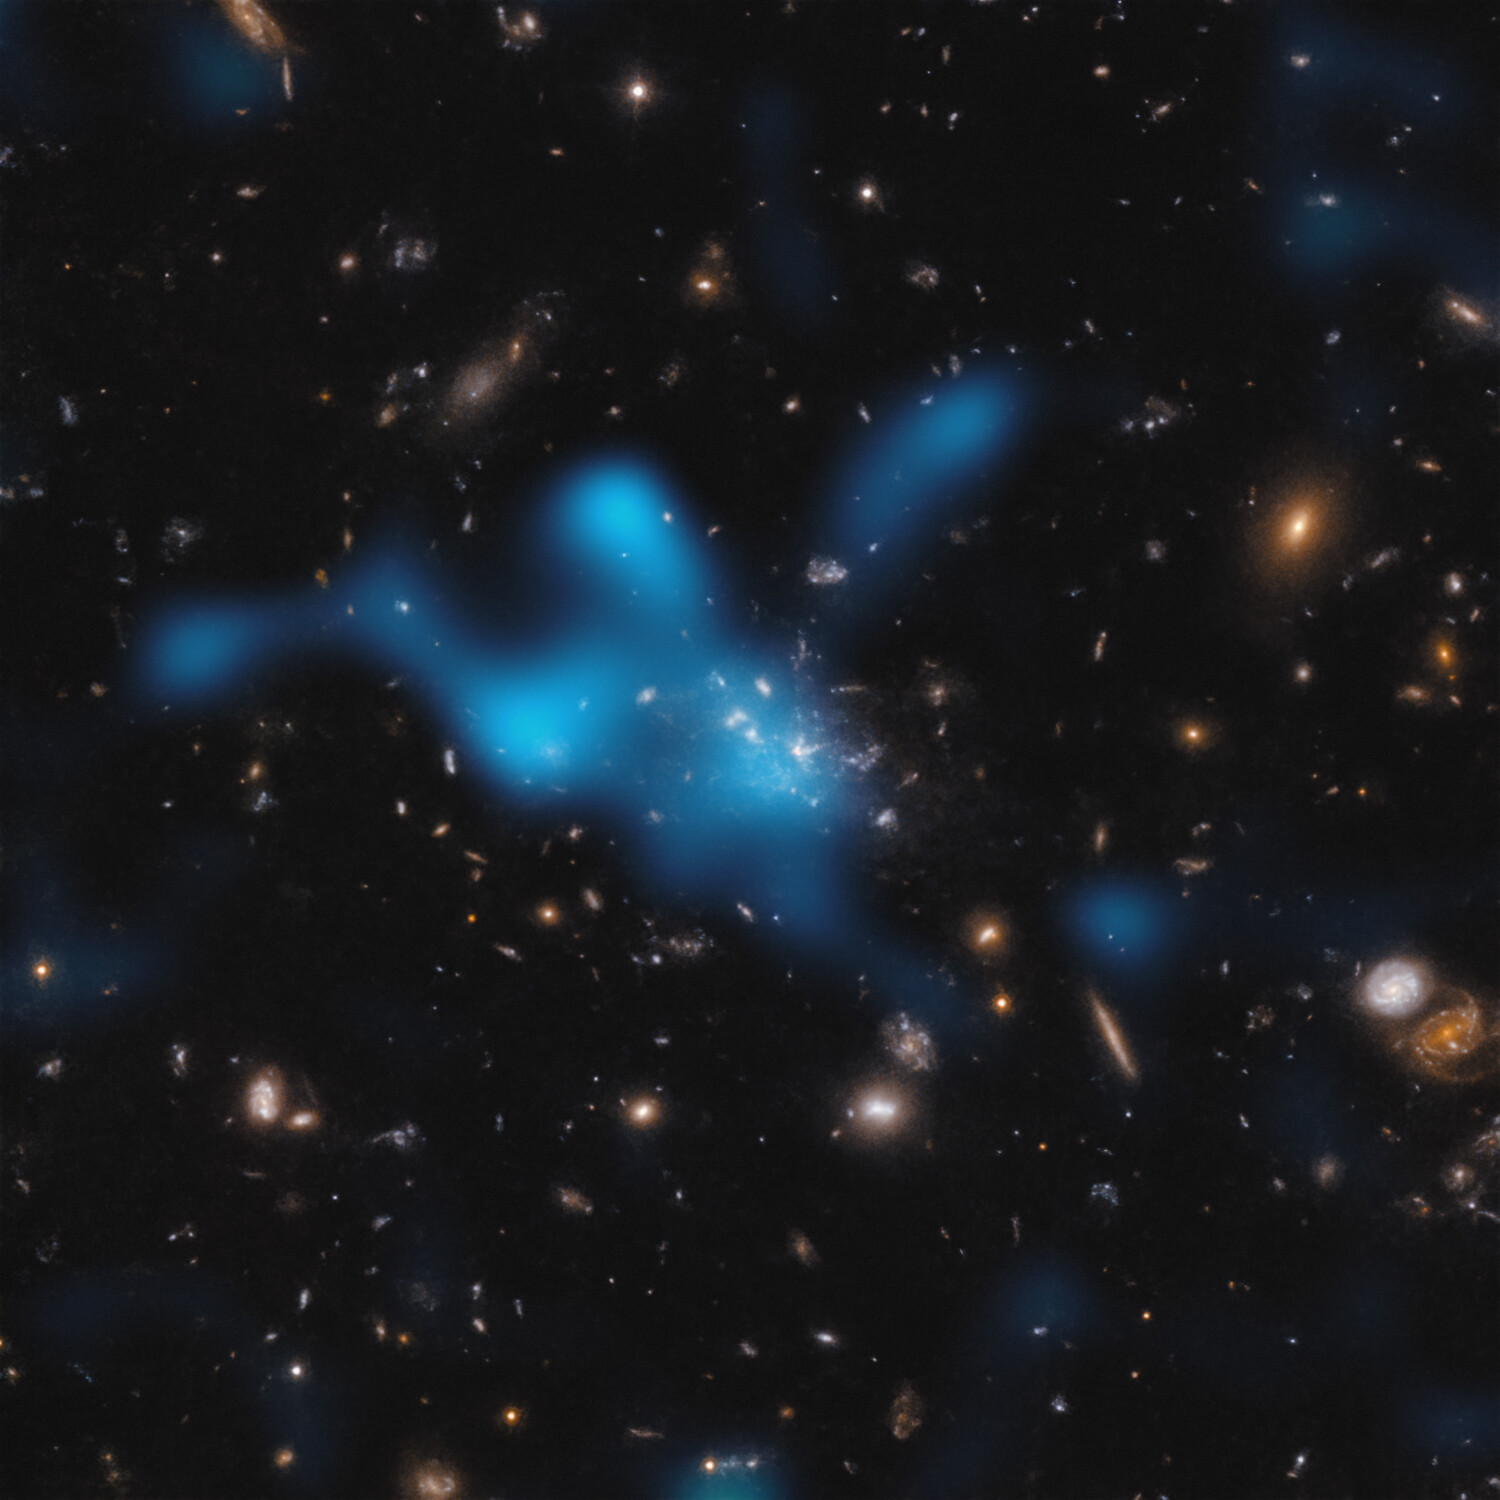 Esta imagen muestra el protocúmulo que se encuentra alrededor de la galaxia Telaraña (formalmente conocida como MRC 1138-262), visto en un momento en el que el Universo tenía solo 3 000 millones de años. La mayor parte de la masa del protocúmulo no se encuentra en las galaxias que se pueden ver en el centro de la imagen, sino en el gas conocido como el “medio intracúmulo” (ICM). El gas caliente del ICM se muestra como una nube azul superpuesta. El gas caliente se detectó con el Atacama Large Millimeter/submillimeter Array (ALMA), del cual ESO es socio. A medida que la luz del fondo cósmico de microondas (la radiación remanente del Big Bang) viaja a través del ICM, gana energía cuando interactúa con los electrones del gas caliente. Esto se conoce como el efecto Sunyaev-Zeldovich. Al estudiar este efecto, la comunidad astronómica puede inferir cuánto gas caliente hay en el ICM y mostrar que el protocúmulo Telaraña está en proceso de convertirse en un cúmulo masivo unido por su propia gravedad. Crédito: ESO/Di Mascolo et al.; HST: H. Ford